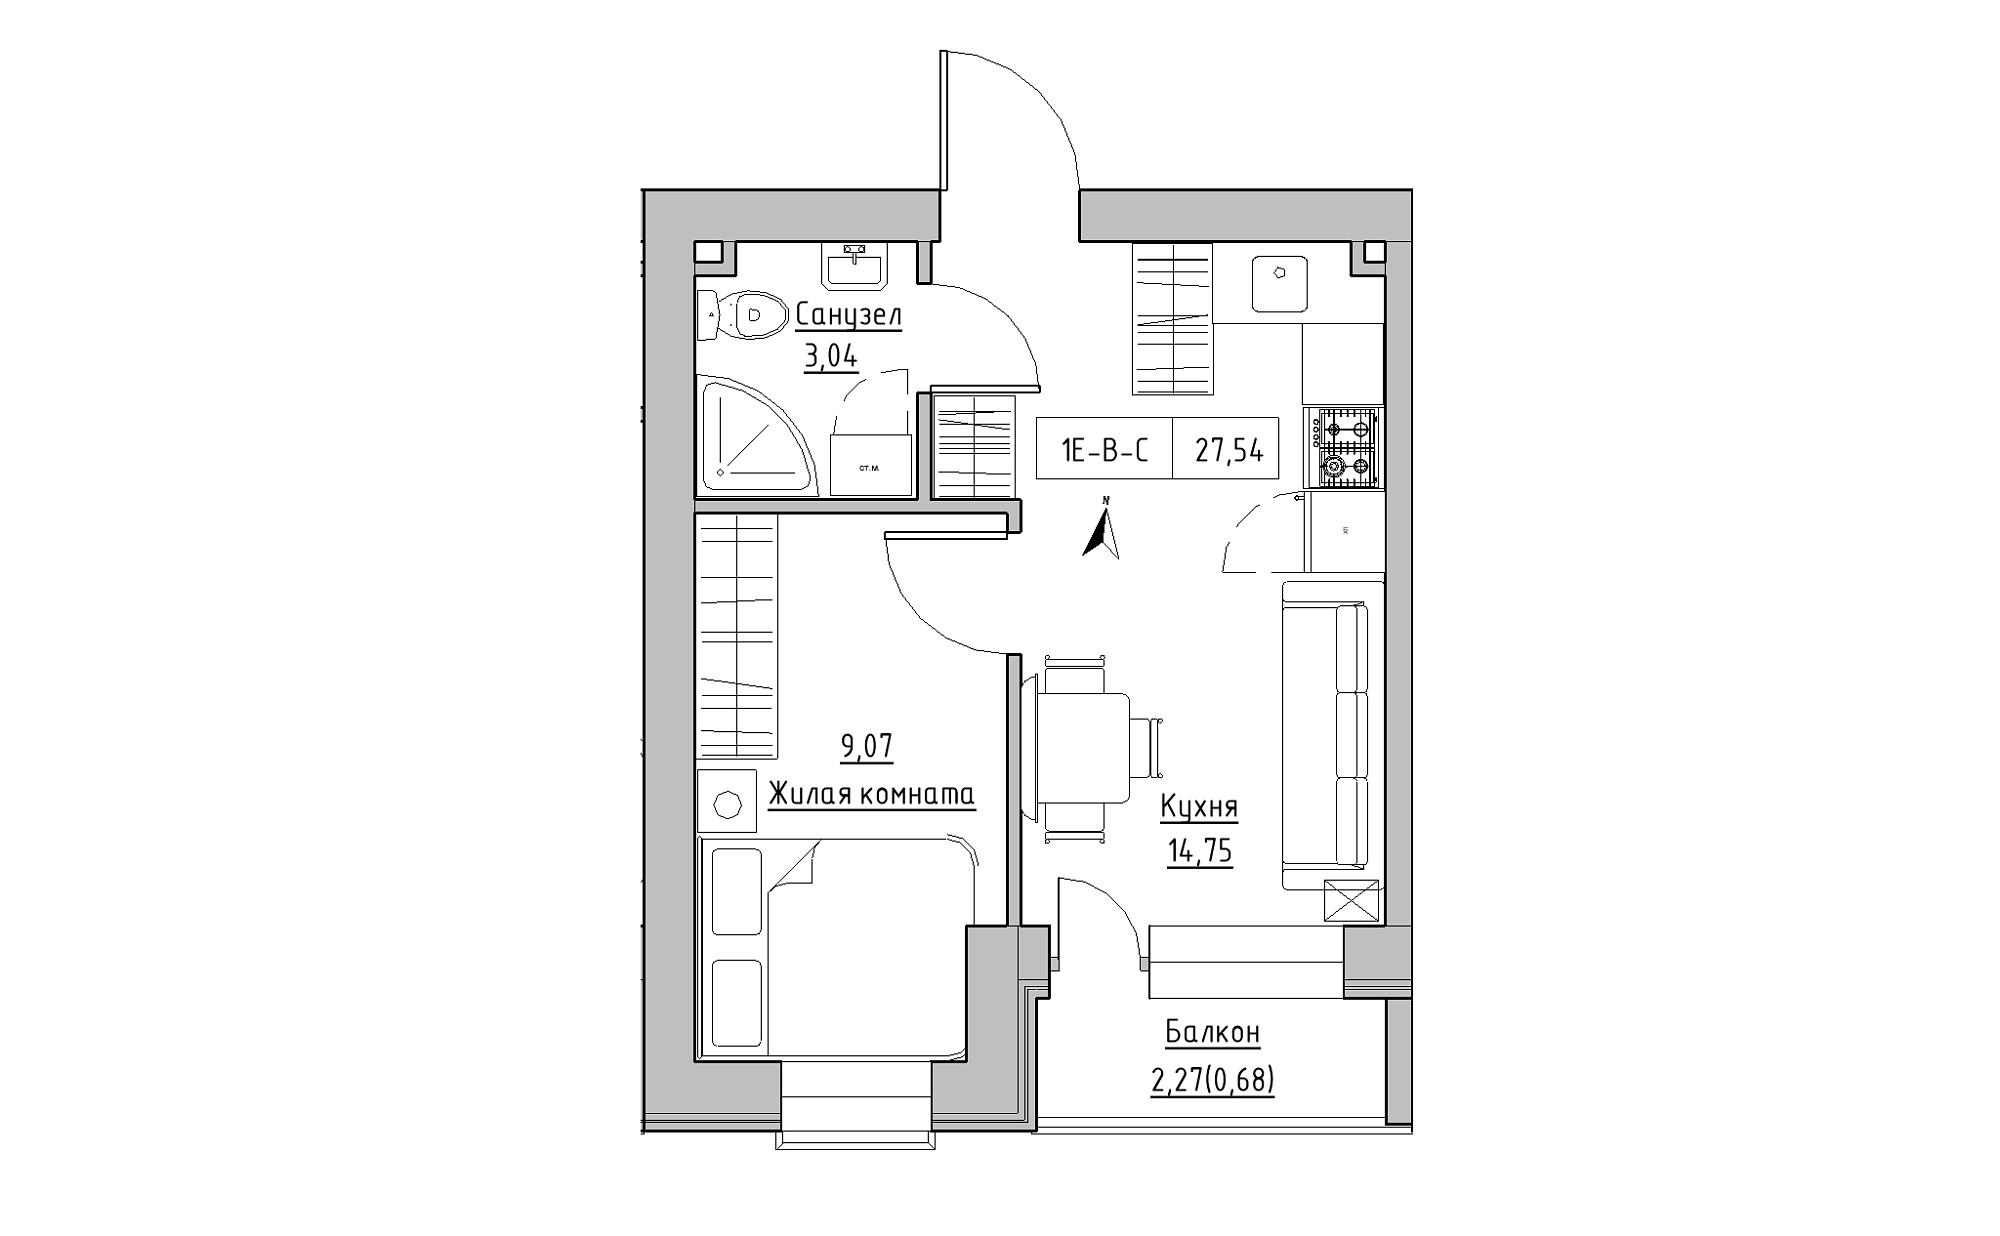 Планування 1-к квартира площею 27.54м2, KS-023-05/0012.